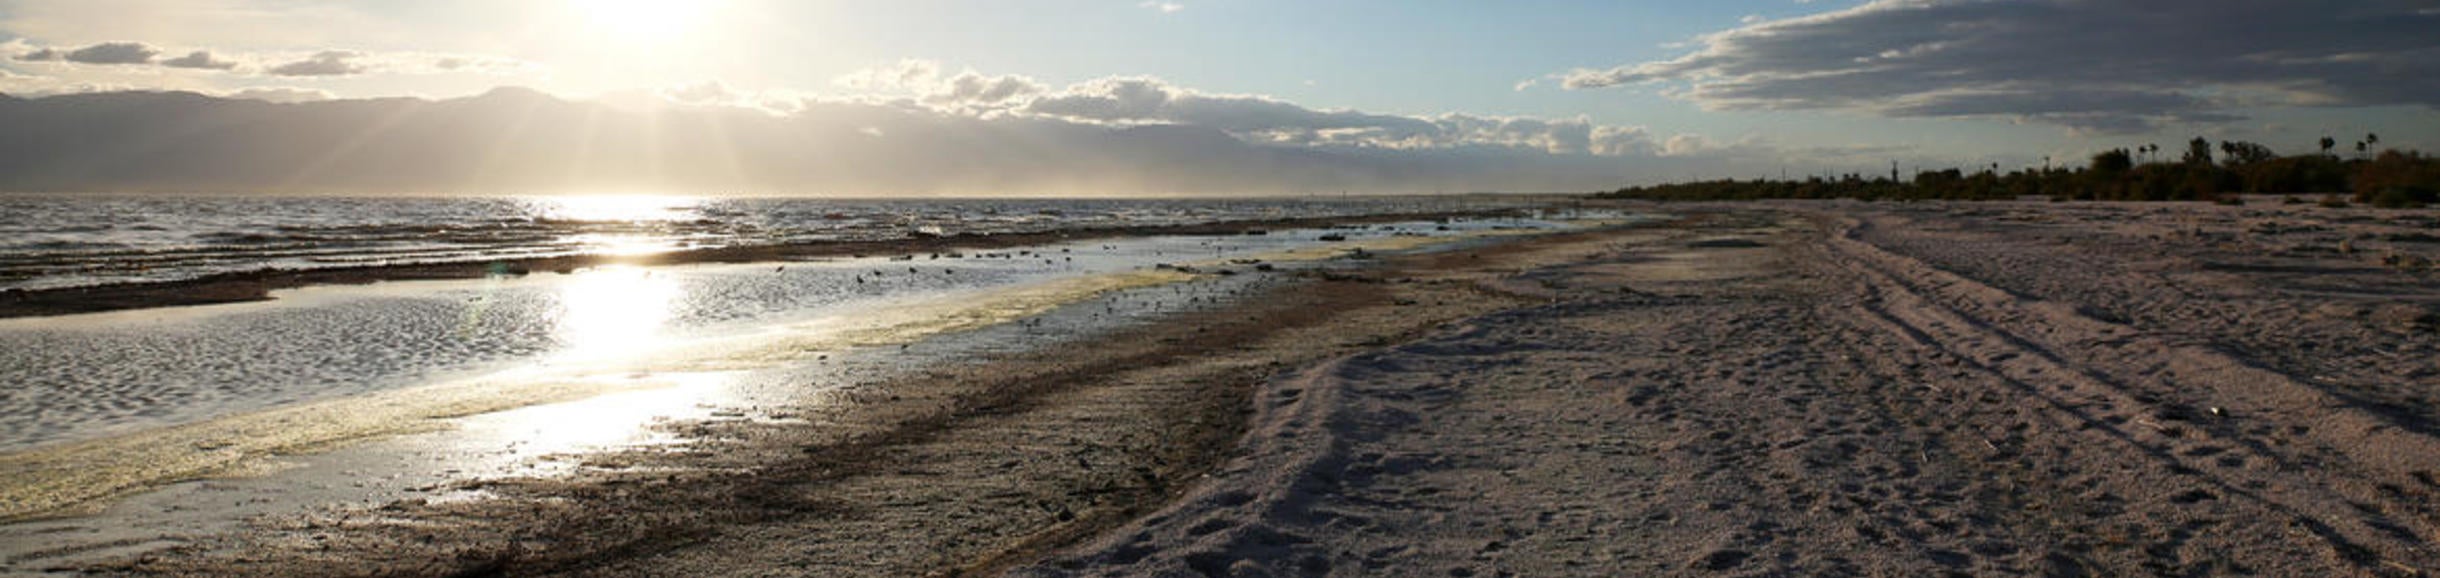 Salton Sea (c) UCR